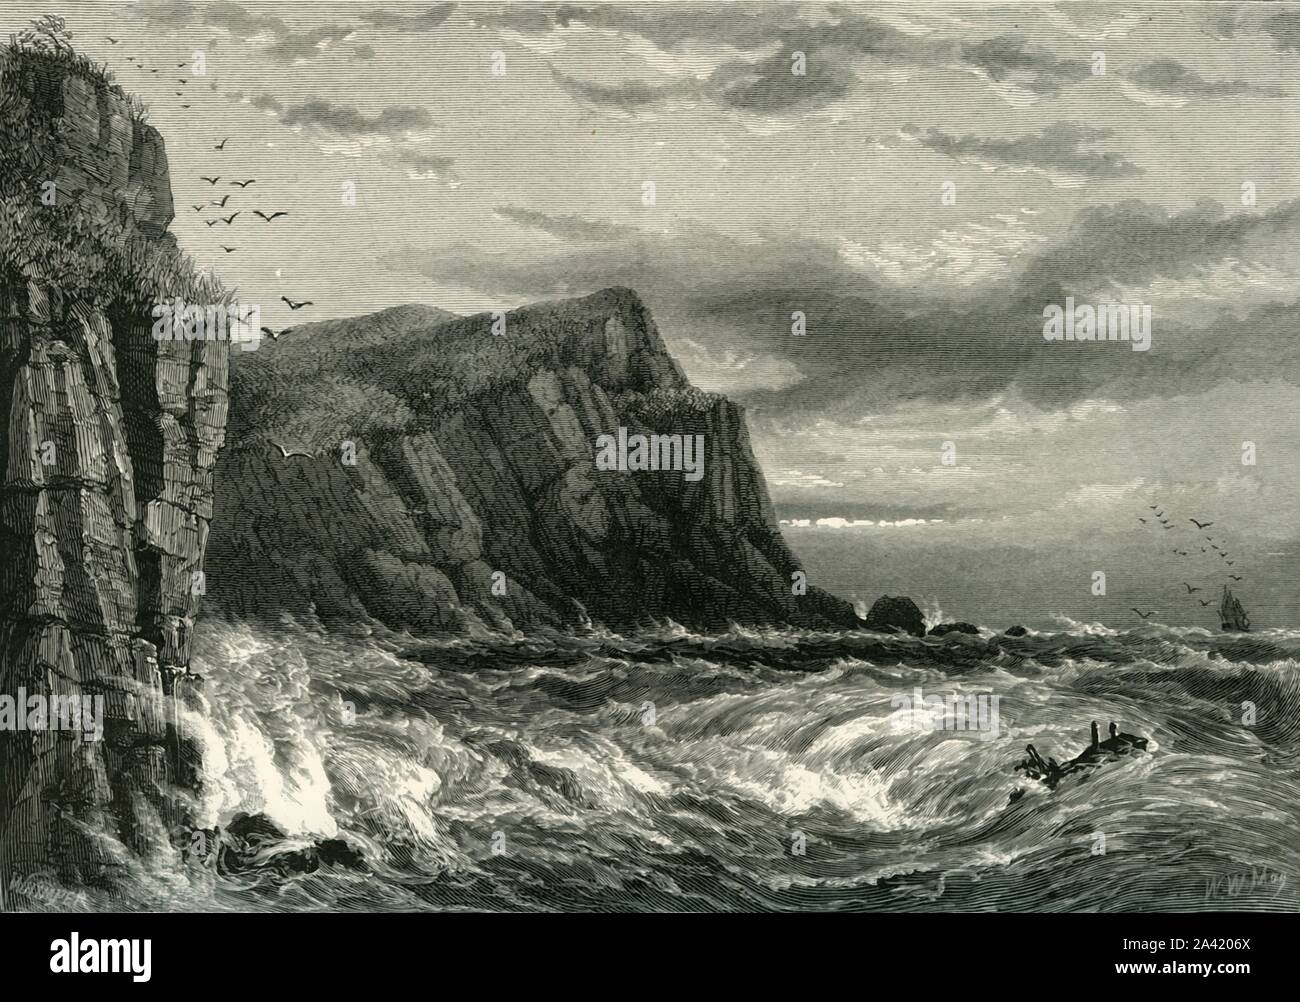 "Rocce a Ilfracombe', C1870. Ilfracombe sulla North Devon Coast è un piccolo porto circondato da scogliere. Dal pittoresco Europa - Le Isole Britanniche, Vol. II". [Cassell Petter &AMP; Galpin, Londra, c1870] Foto Stock